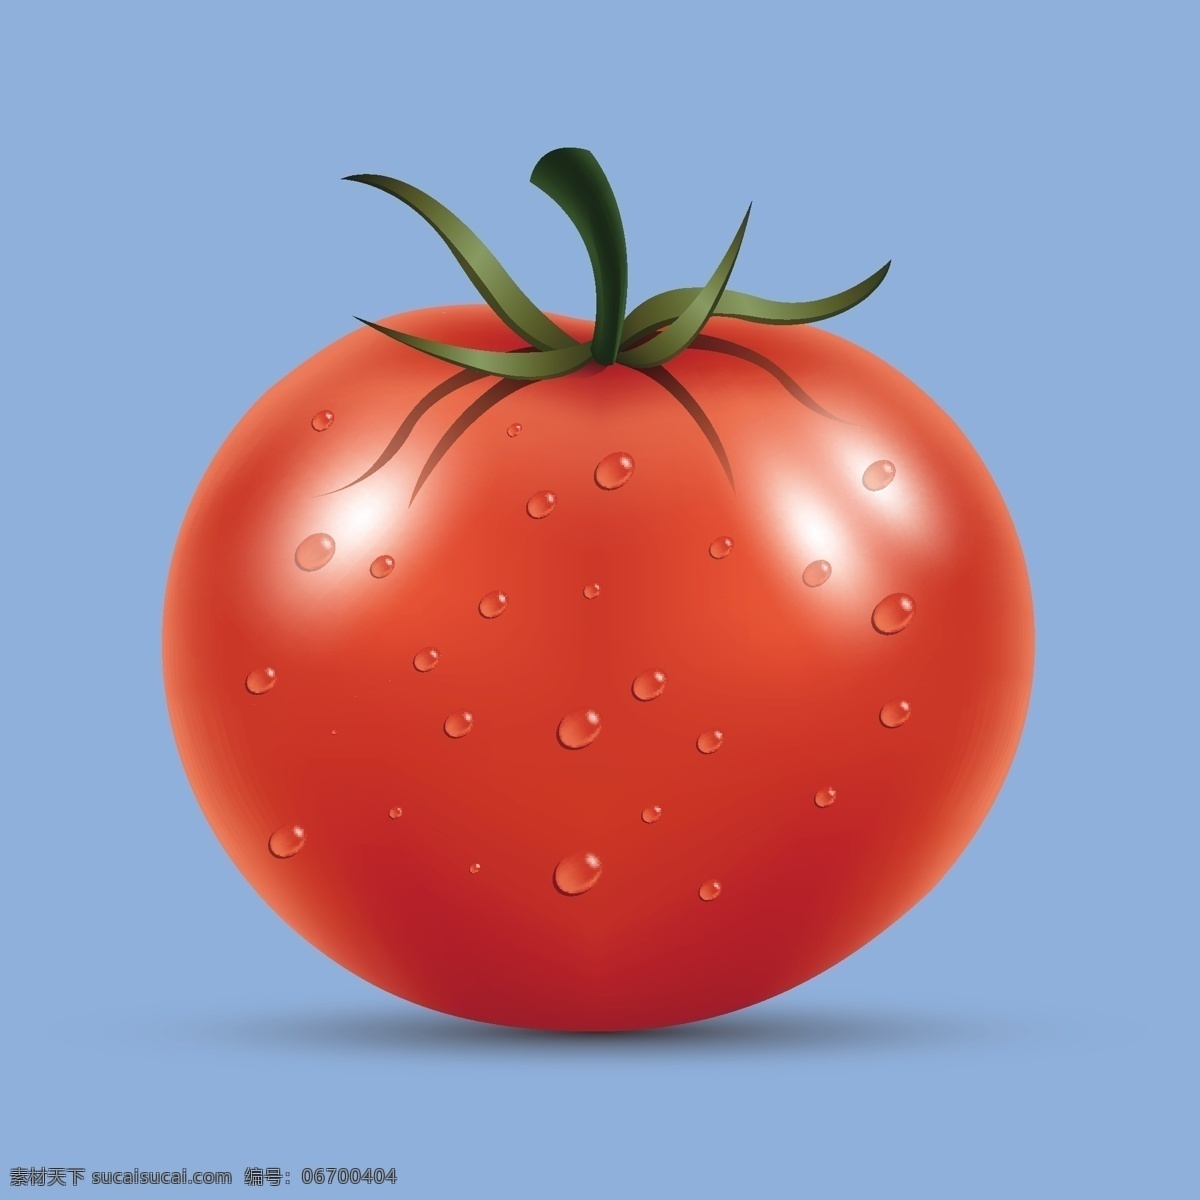 矢量 西红柿 番茄 蔬菜 高清 果蔬 手绘 矢量素材 蕃柿 洋柿子 食物 食材 餐饮美食 食物原料 生物世界